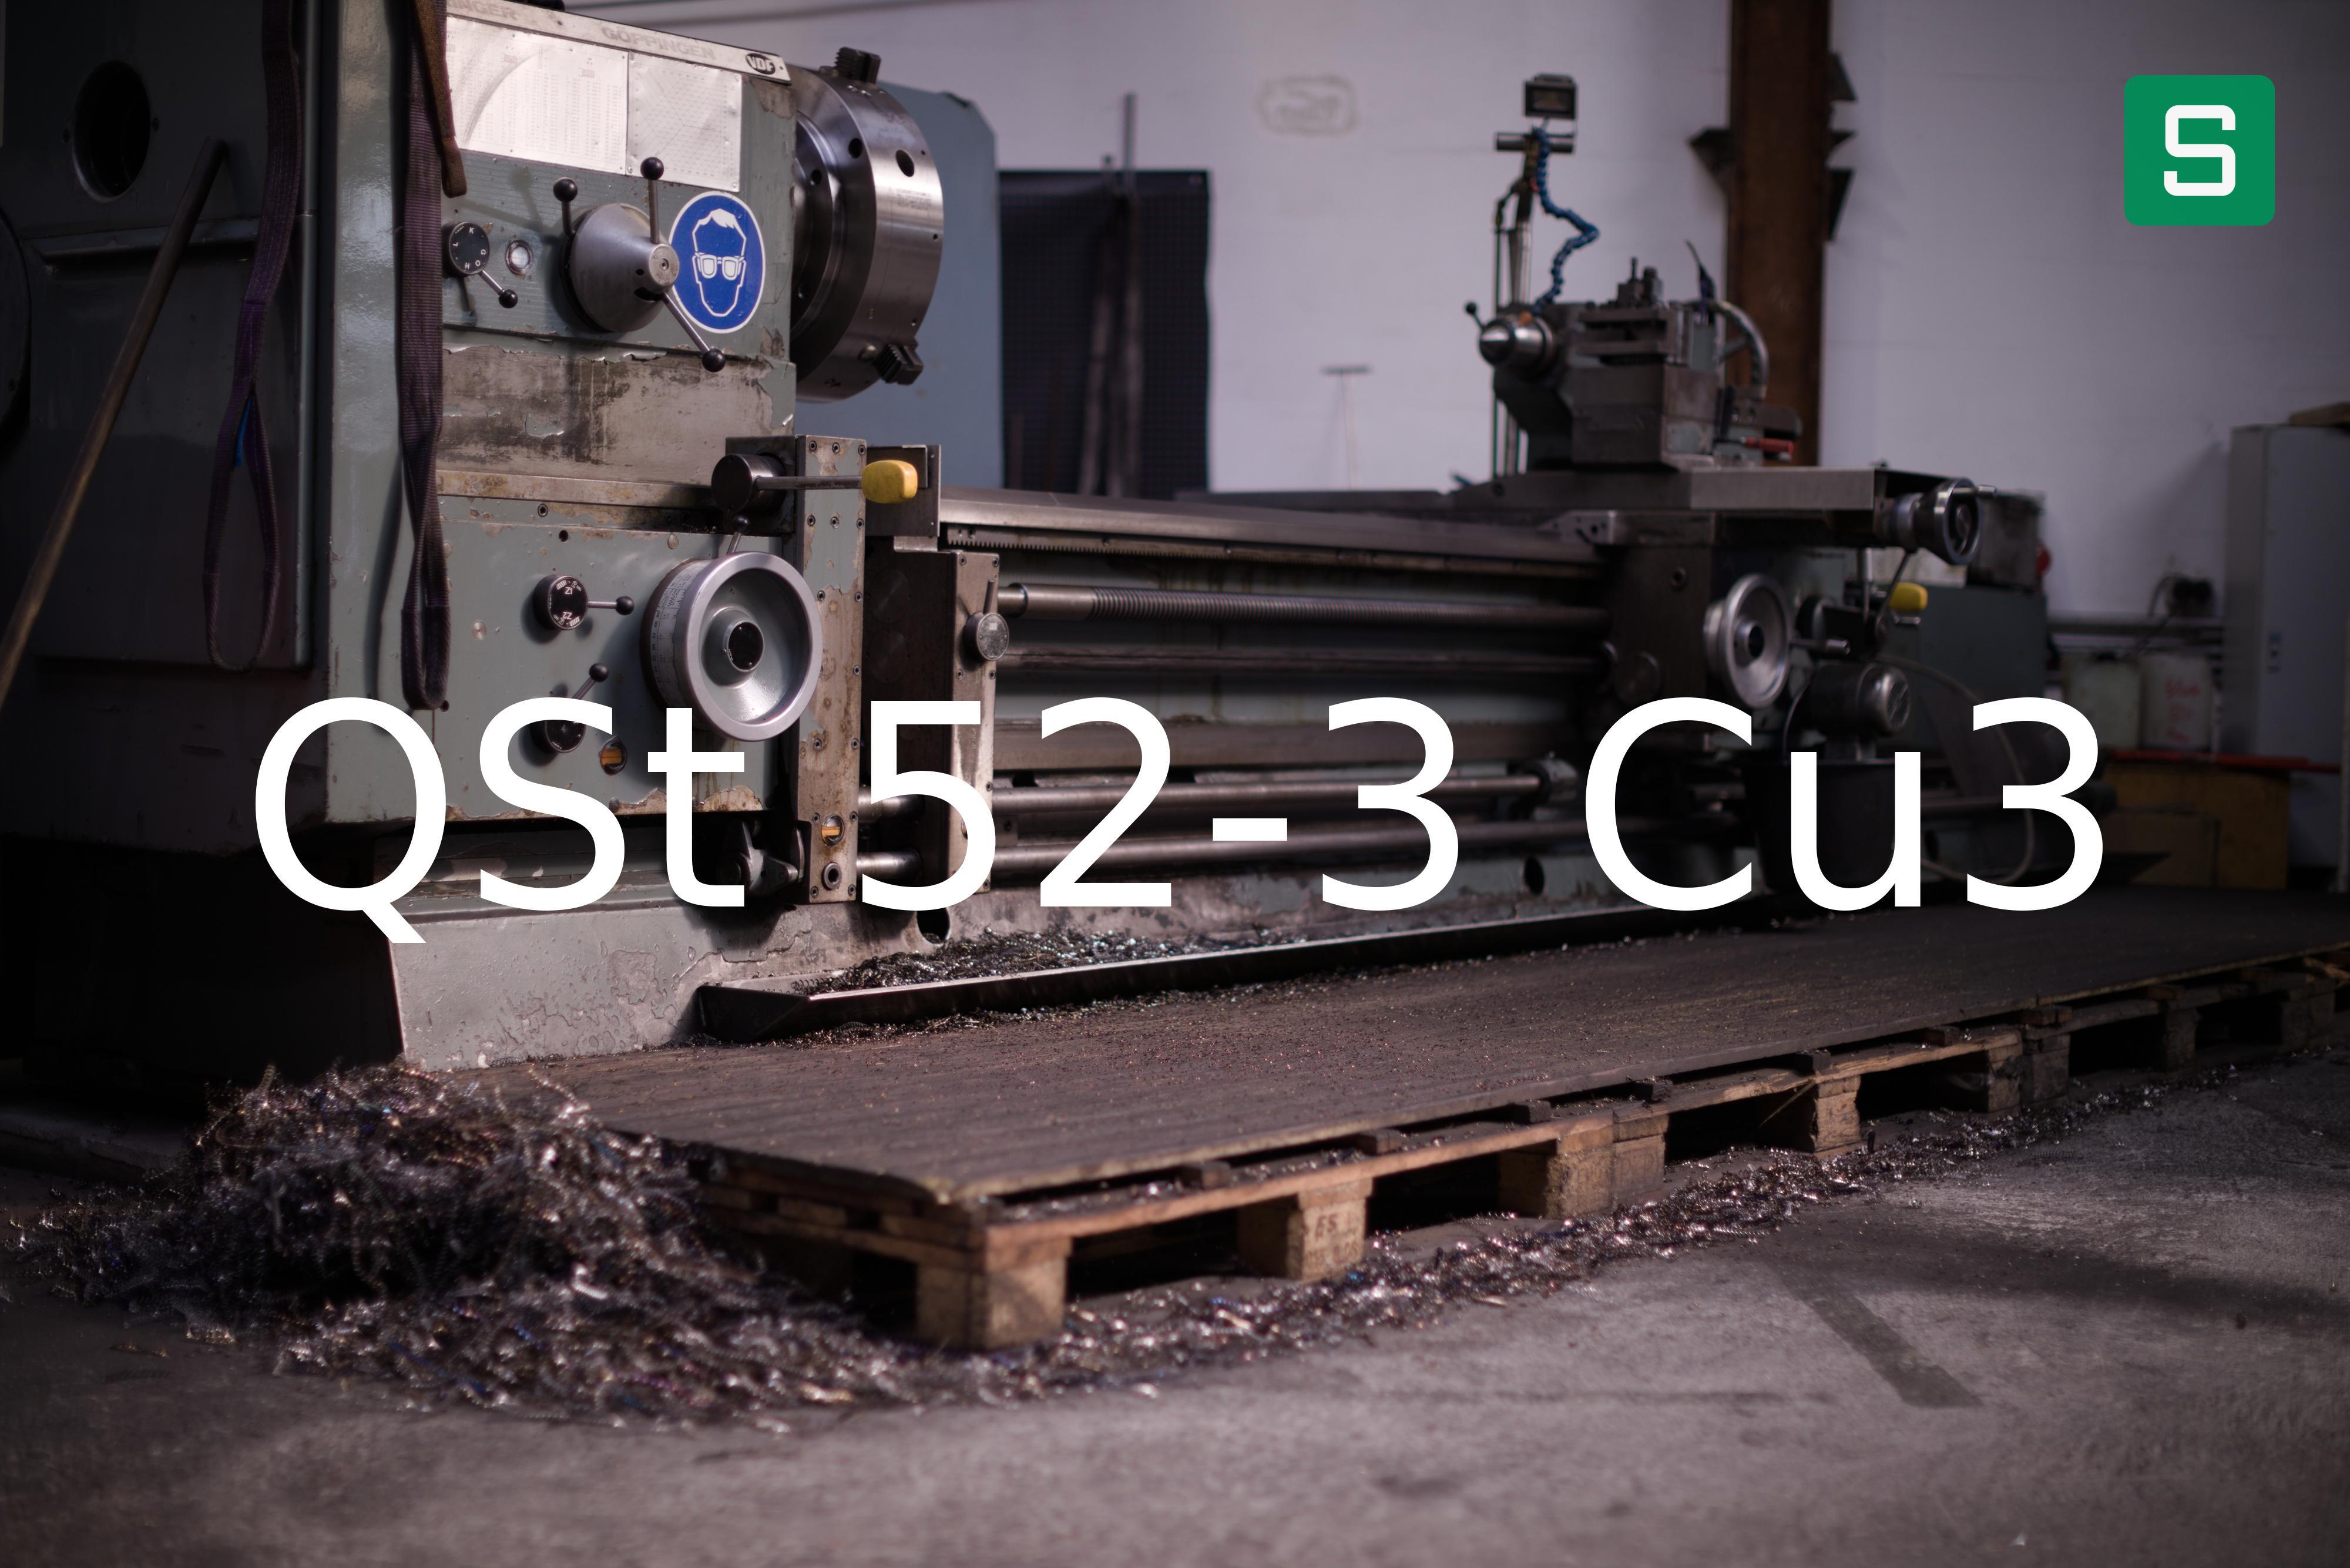 Steel Material: QSt 52-3 Cu3